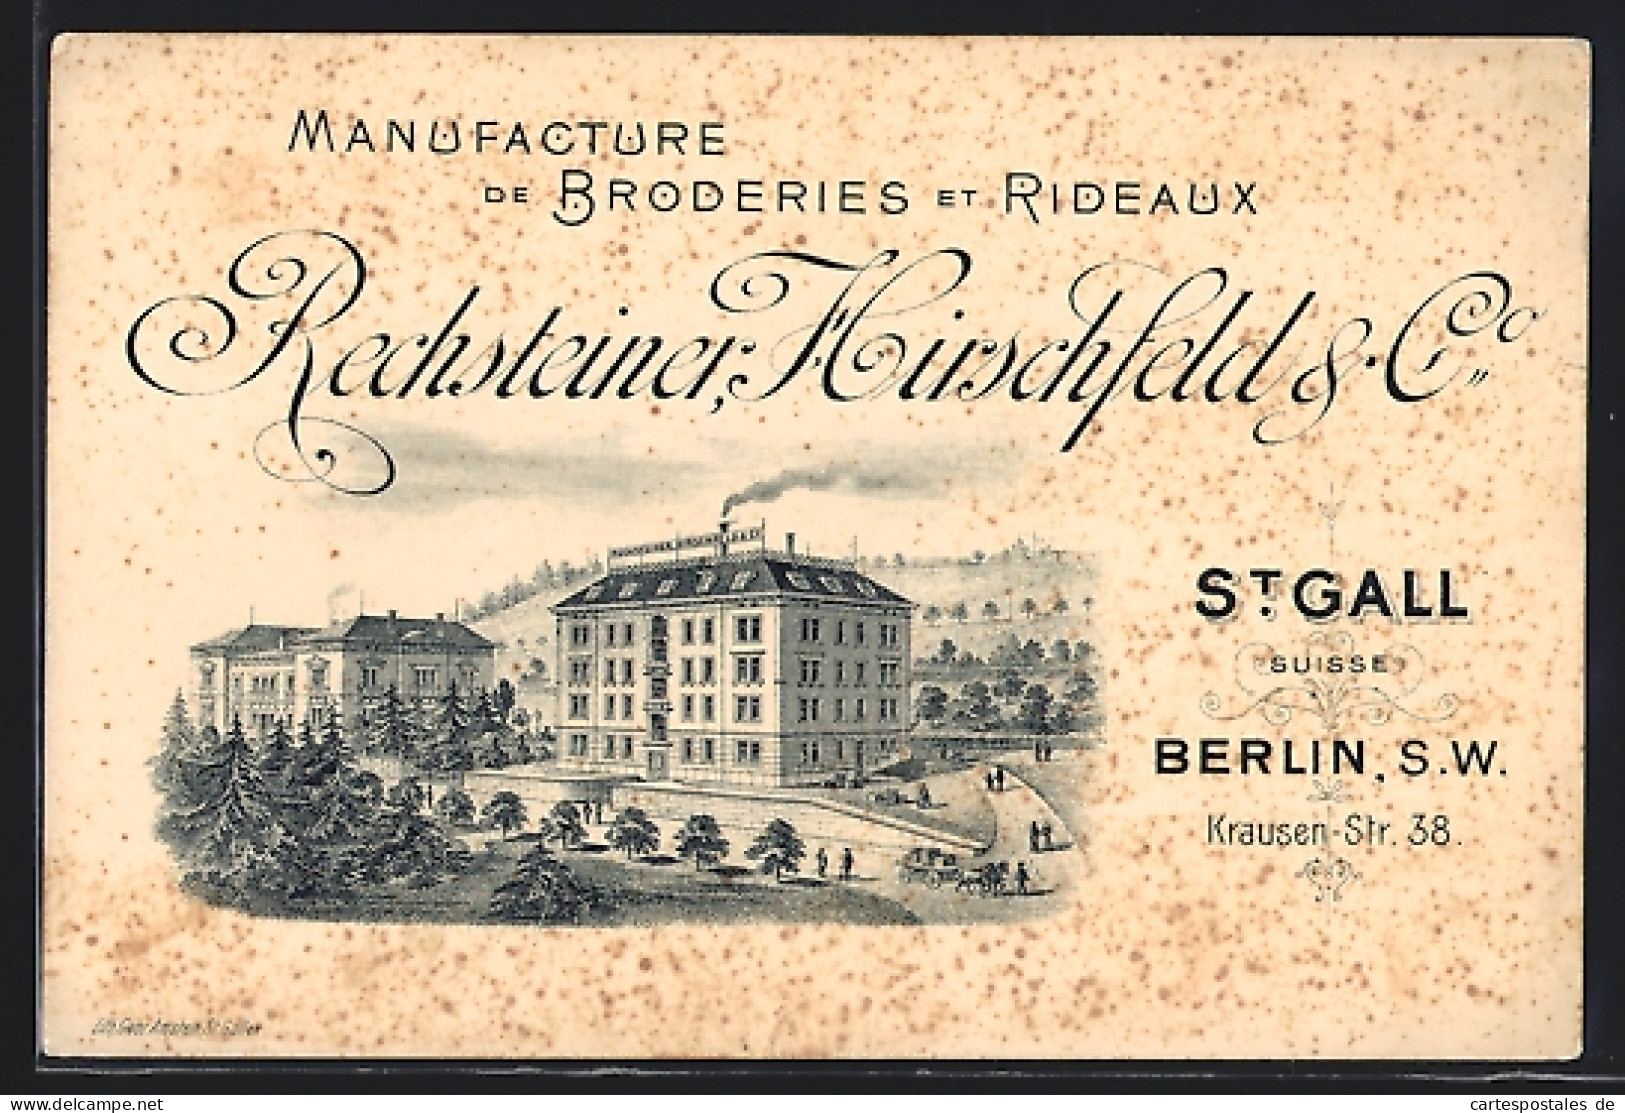 AK St. Gallen, Manufacture De Broderies Et Rideaux Rechsteiner, Hirschfeld & Co.  - St. Gallen